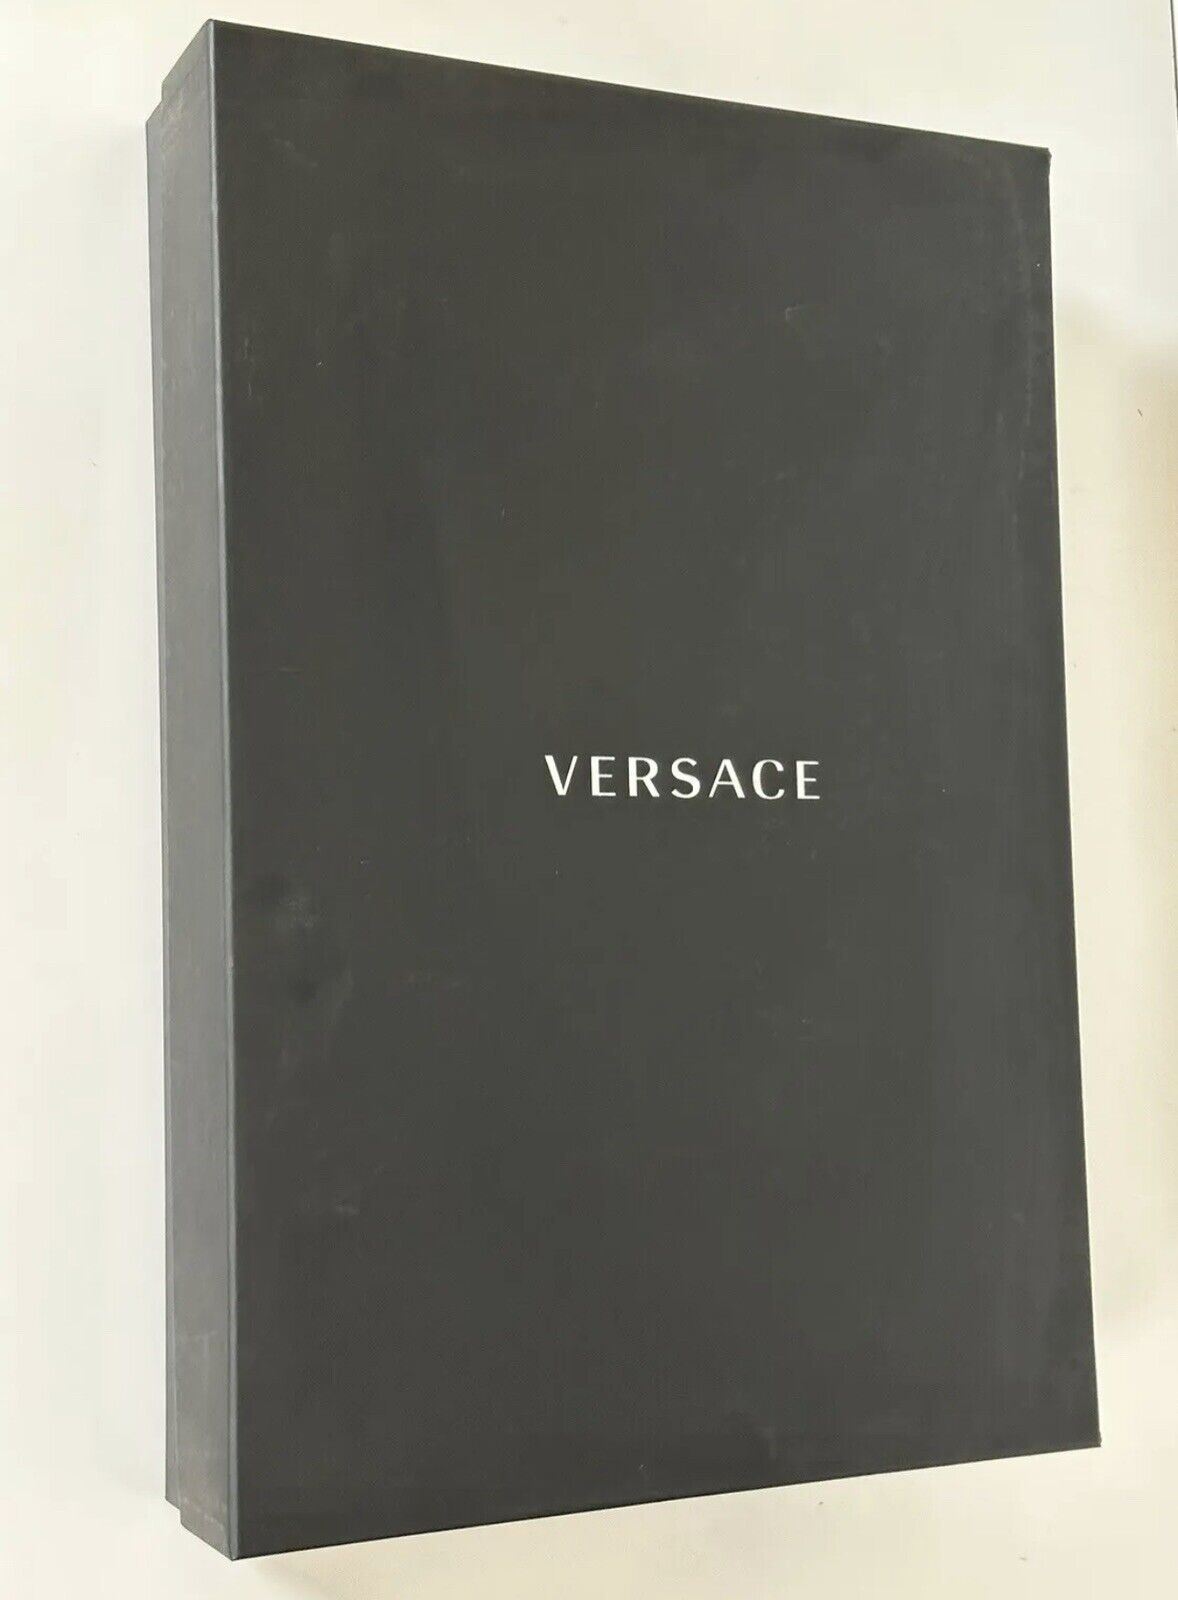 NWT $1500 Versace Medusa Хлопковый махровый банный халат, черный, маленький ZACJ00008